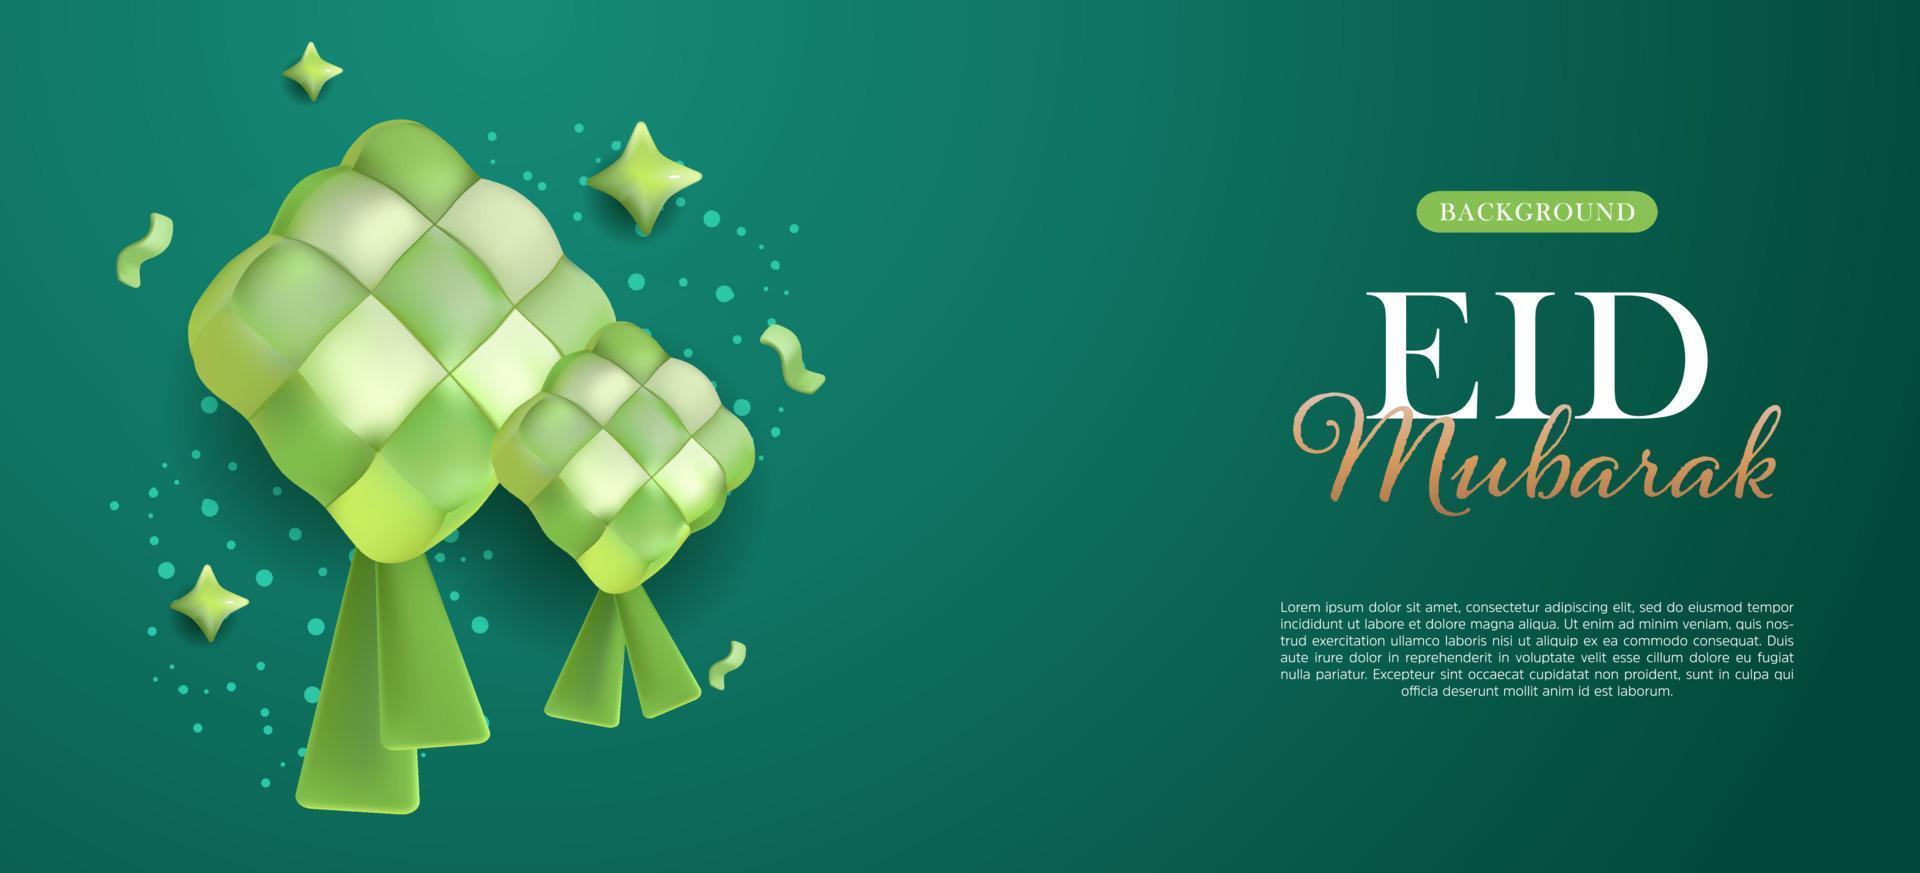 Eid Mubarak Background Design Ketupat Vector Illustration with Green Color